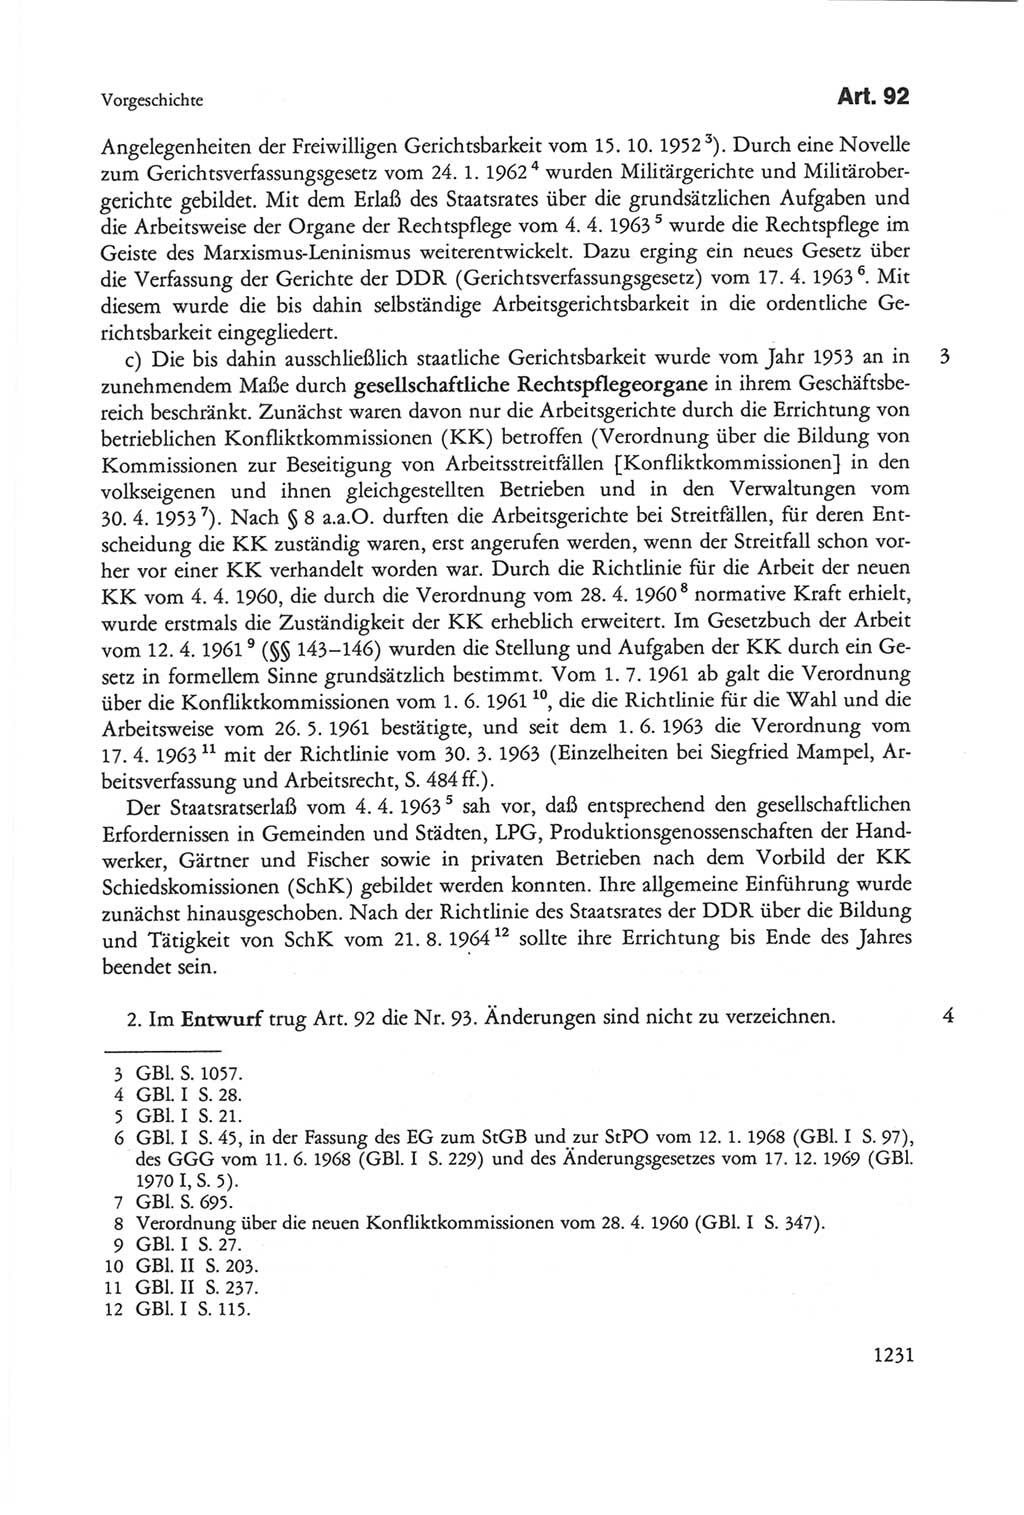 Die sozialistische Verfassung der Deutschen Demokratischen Republik (DDR), Kommentar mit einem Nachtrag 1997, Seite 1231 (Soz. Verf. DDR Komm. Nachtr. 1997, S. 1231)